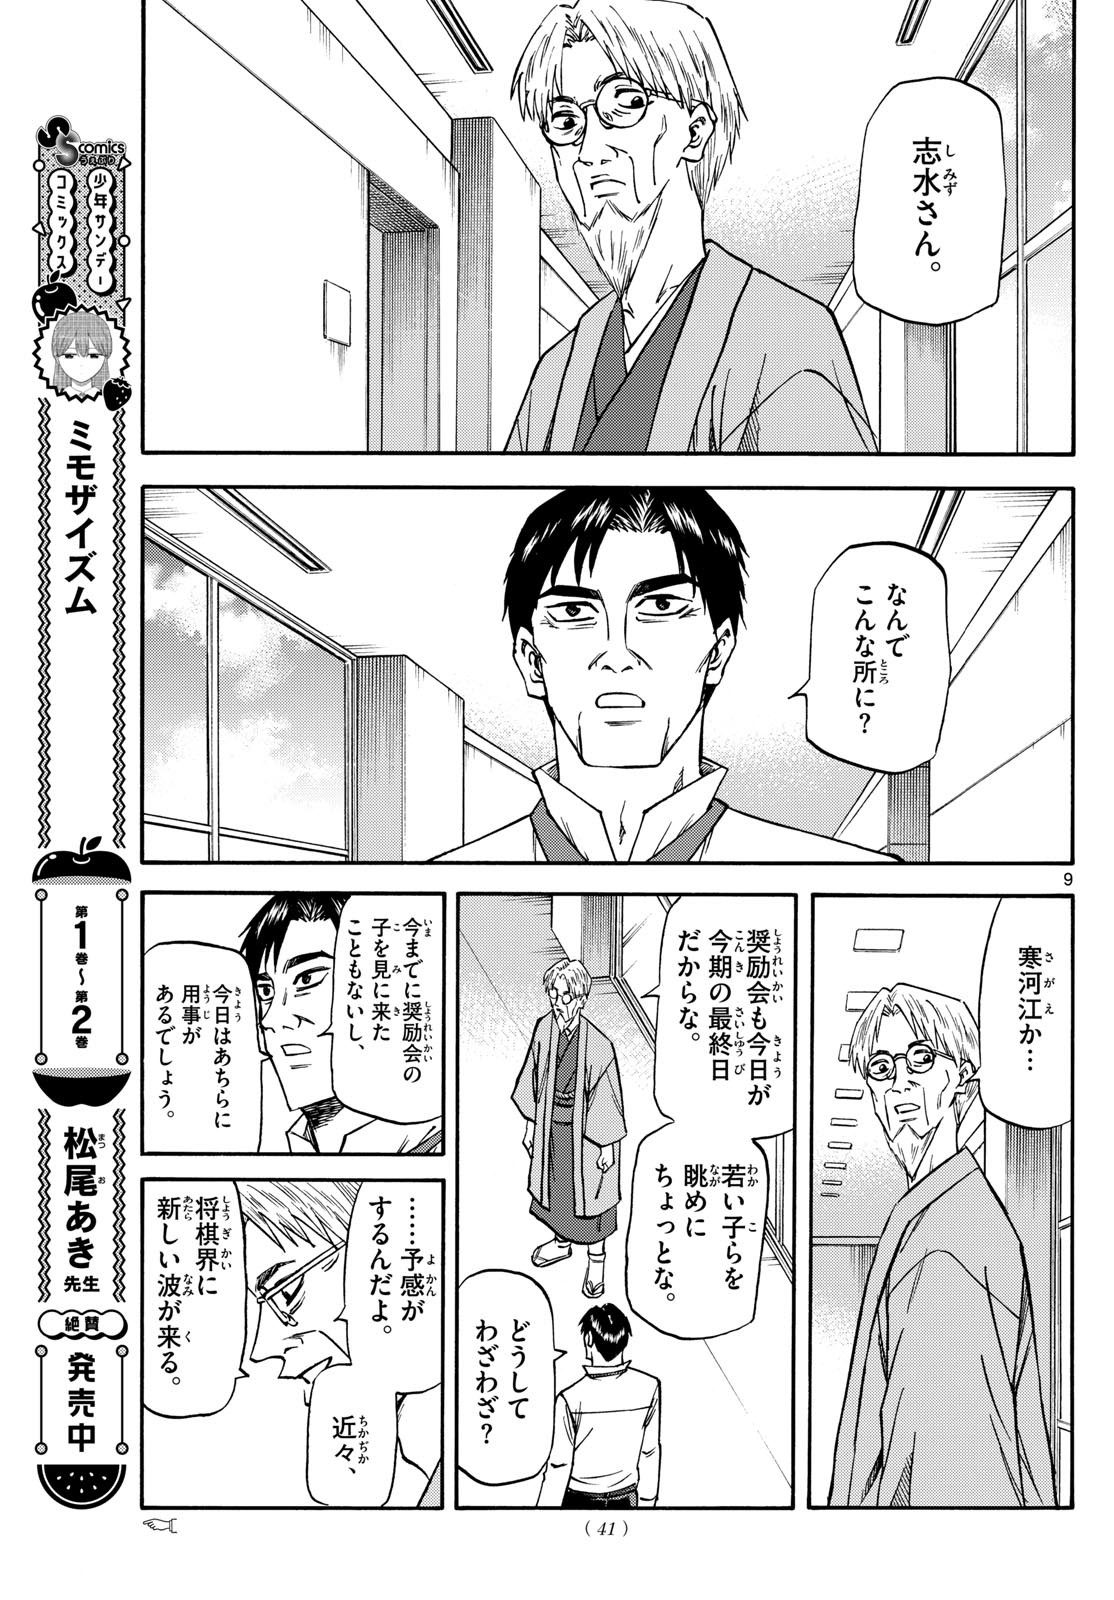 Ryu-to-Ichigo - Chapter 181 - Page 9